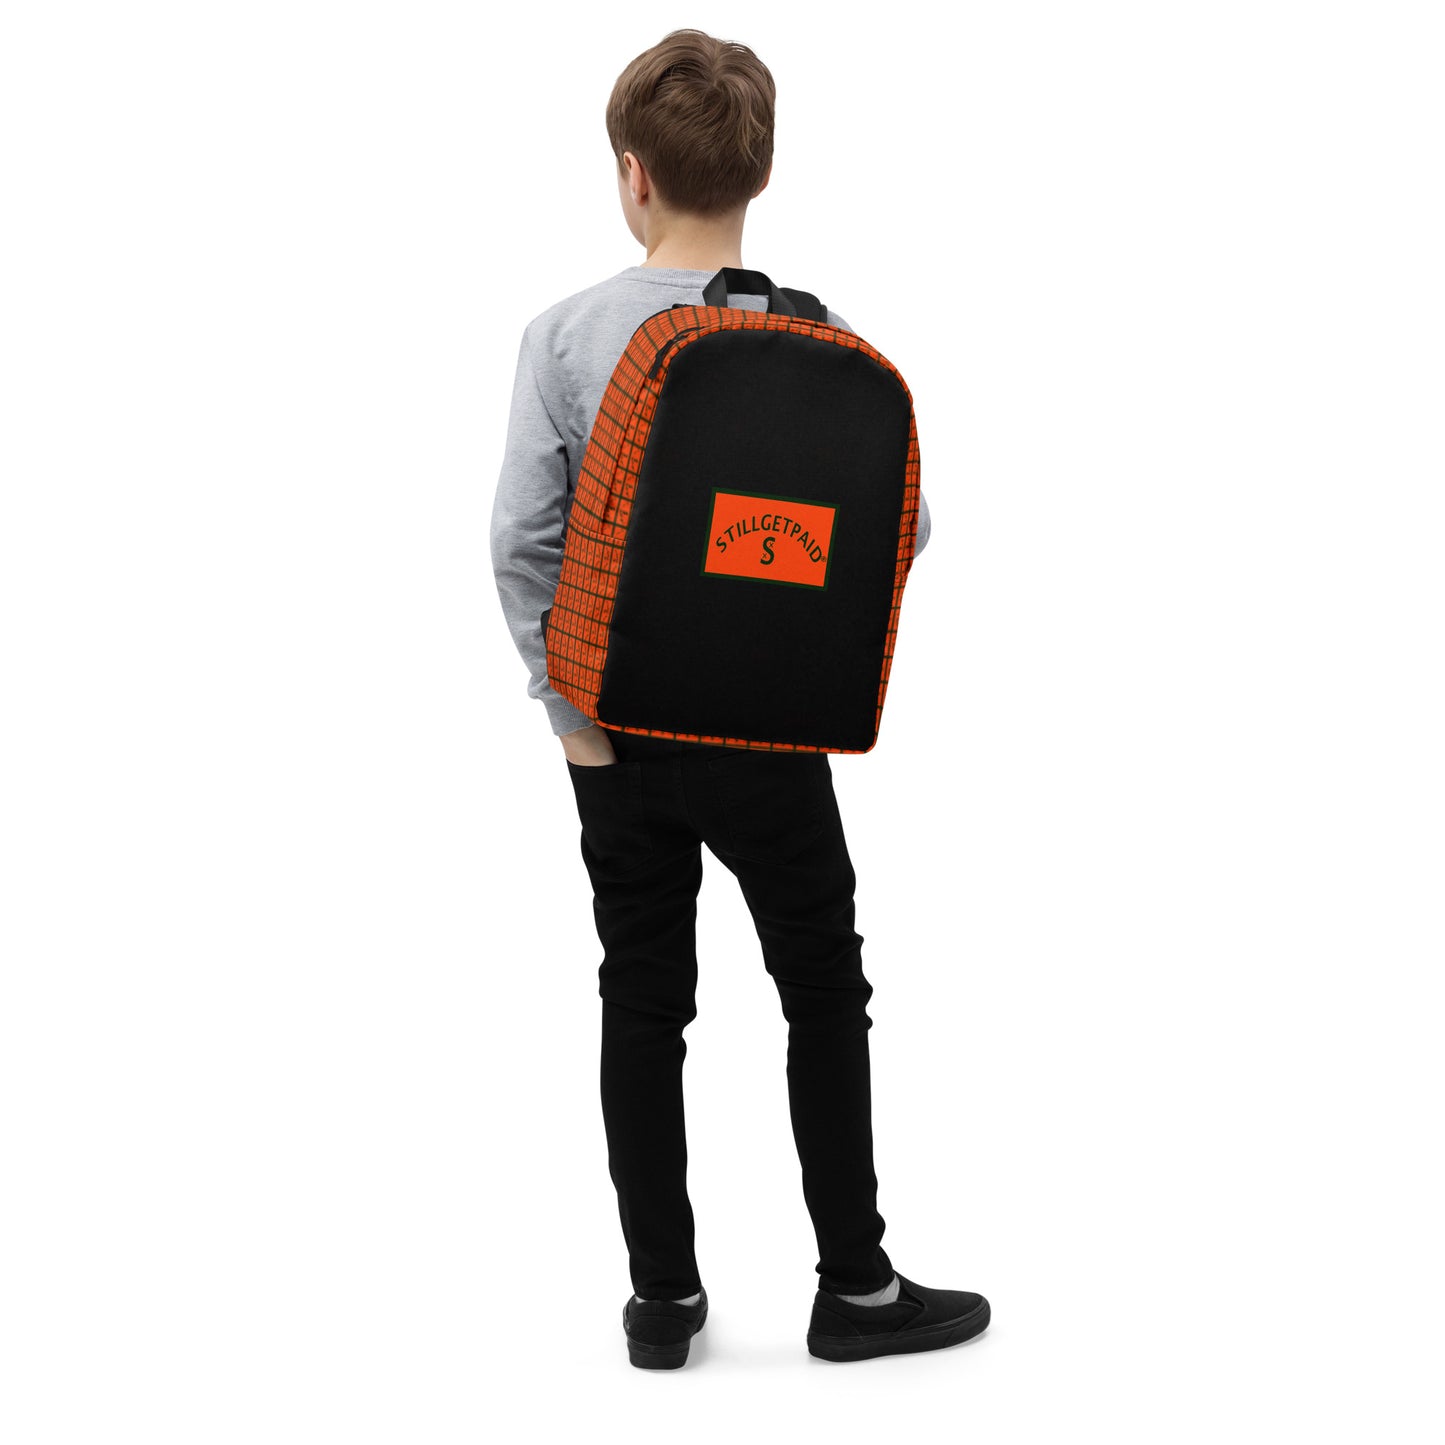 STILLGETPAID® APPAREL  Backpack